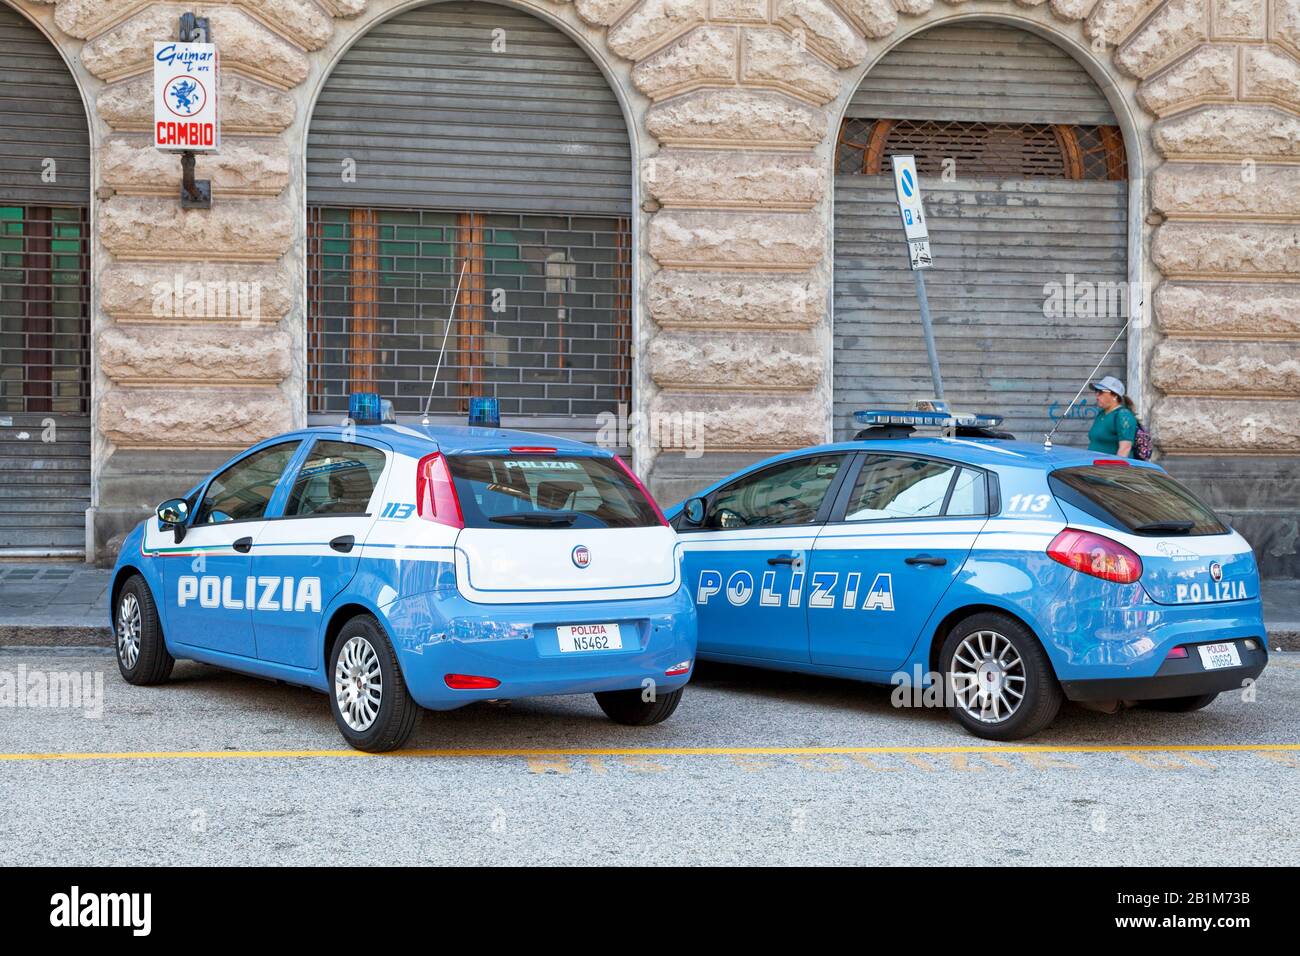 Gênes, Italie - 30 mars 2019: Voitures de police de l'Escadra Volante de la 'Polizia', garée dans une rue de la vieille ville. Banque D'Images